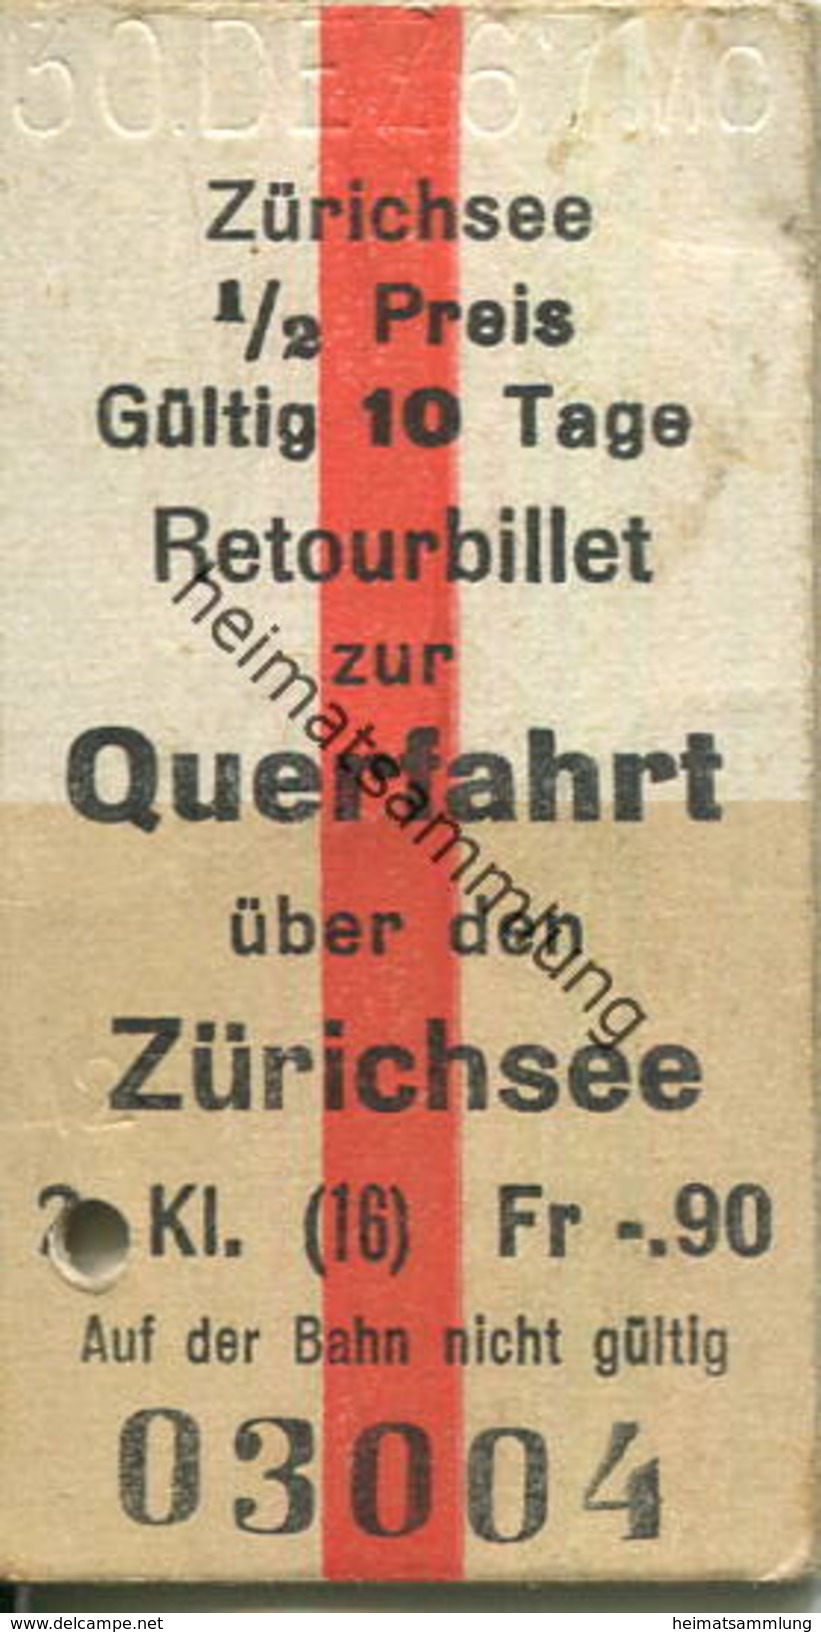 Schweiz - Zürichsee Retourbillet Zur Querfahrt über Den Zürichsee - Fahrkarte 1967 - Europe